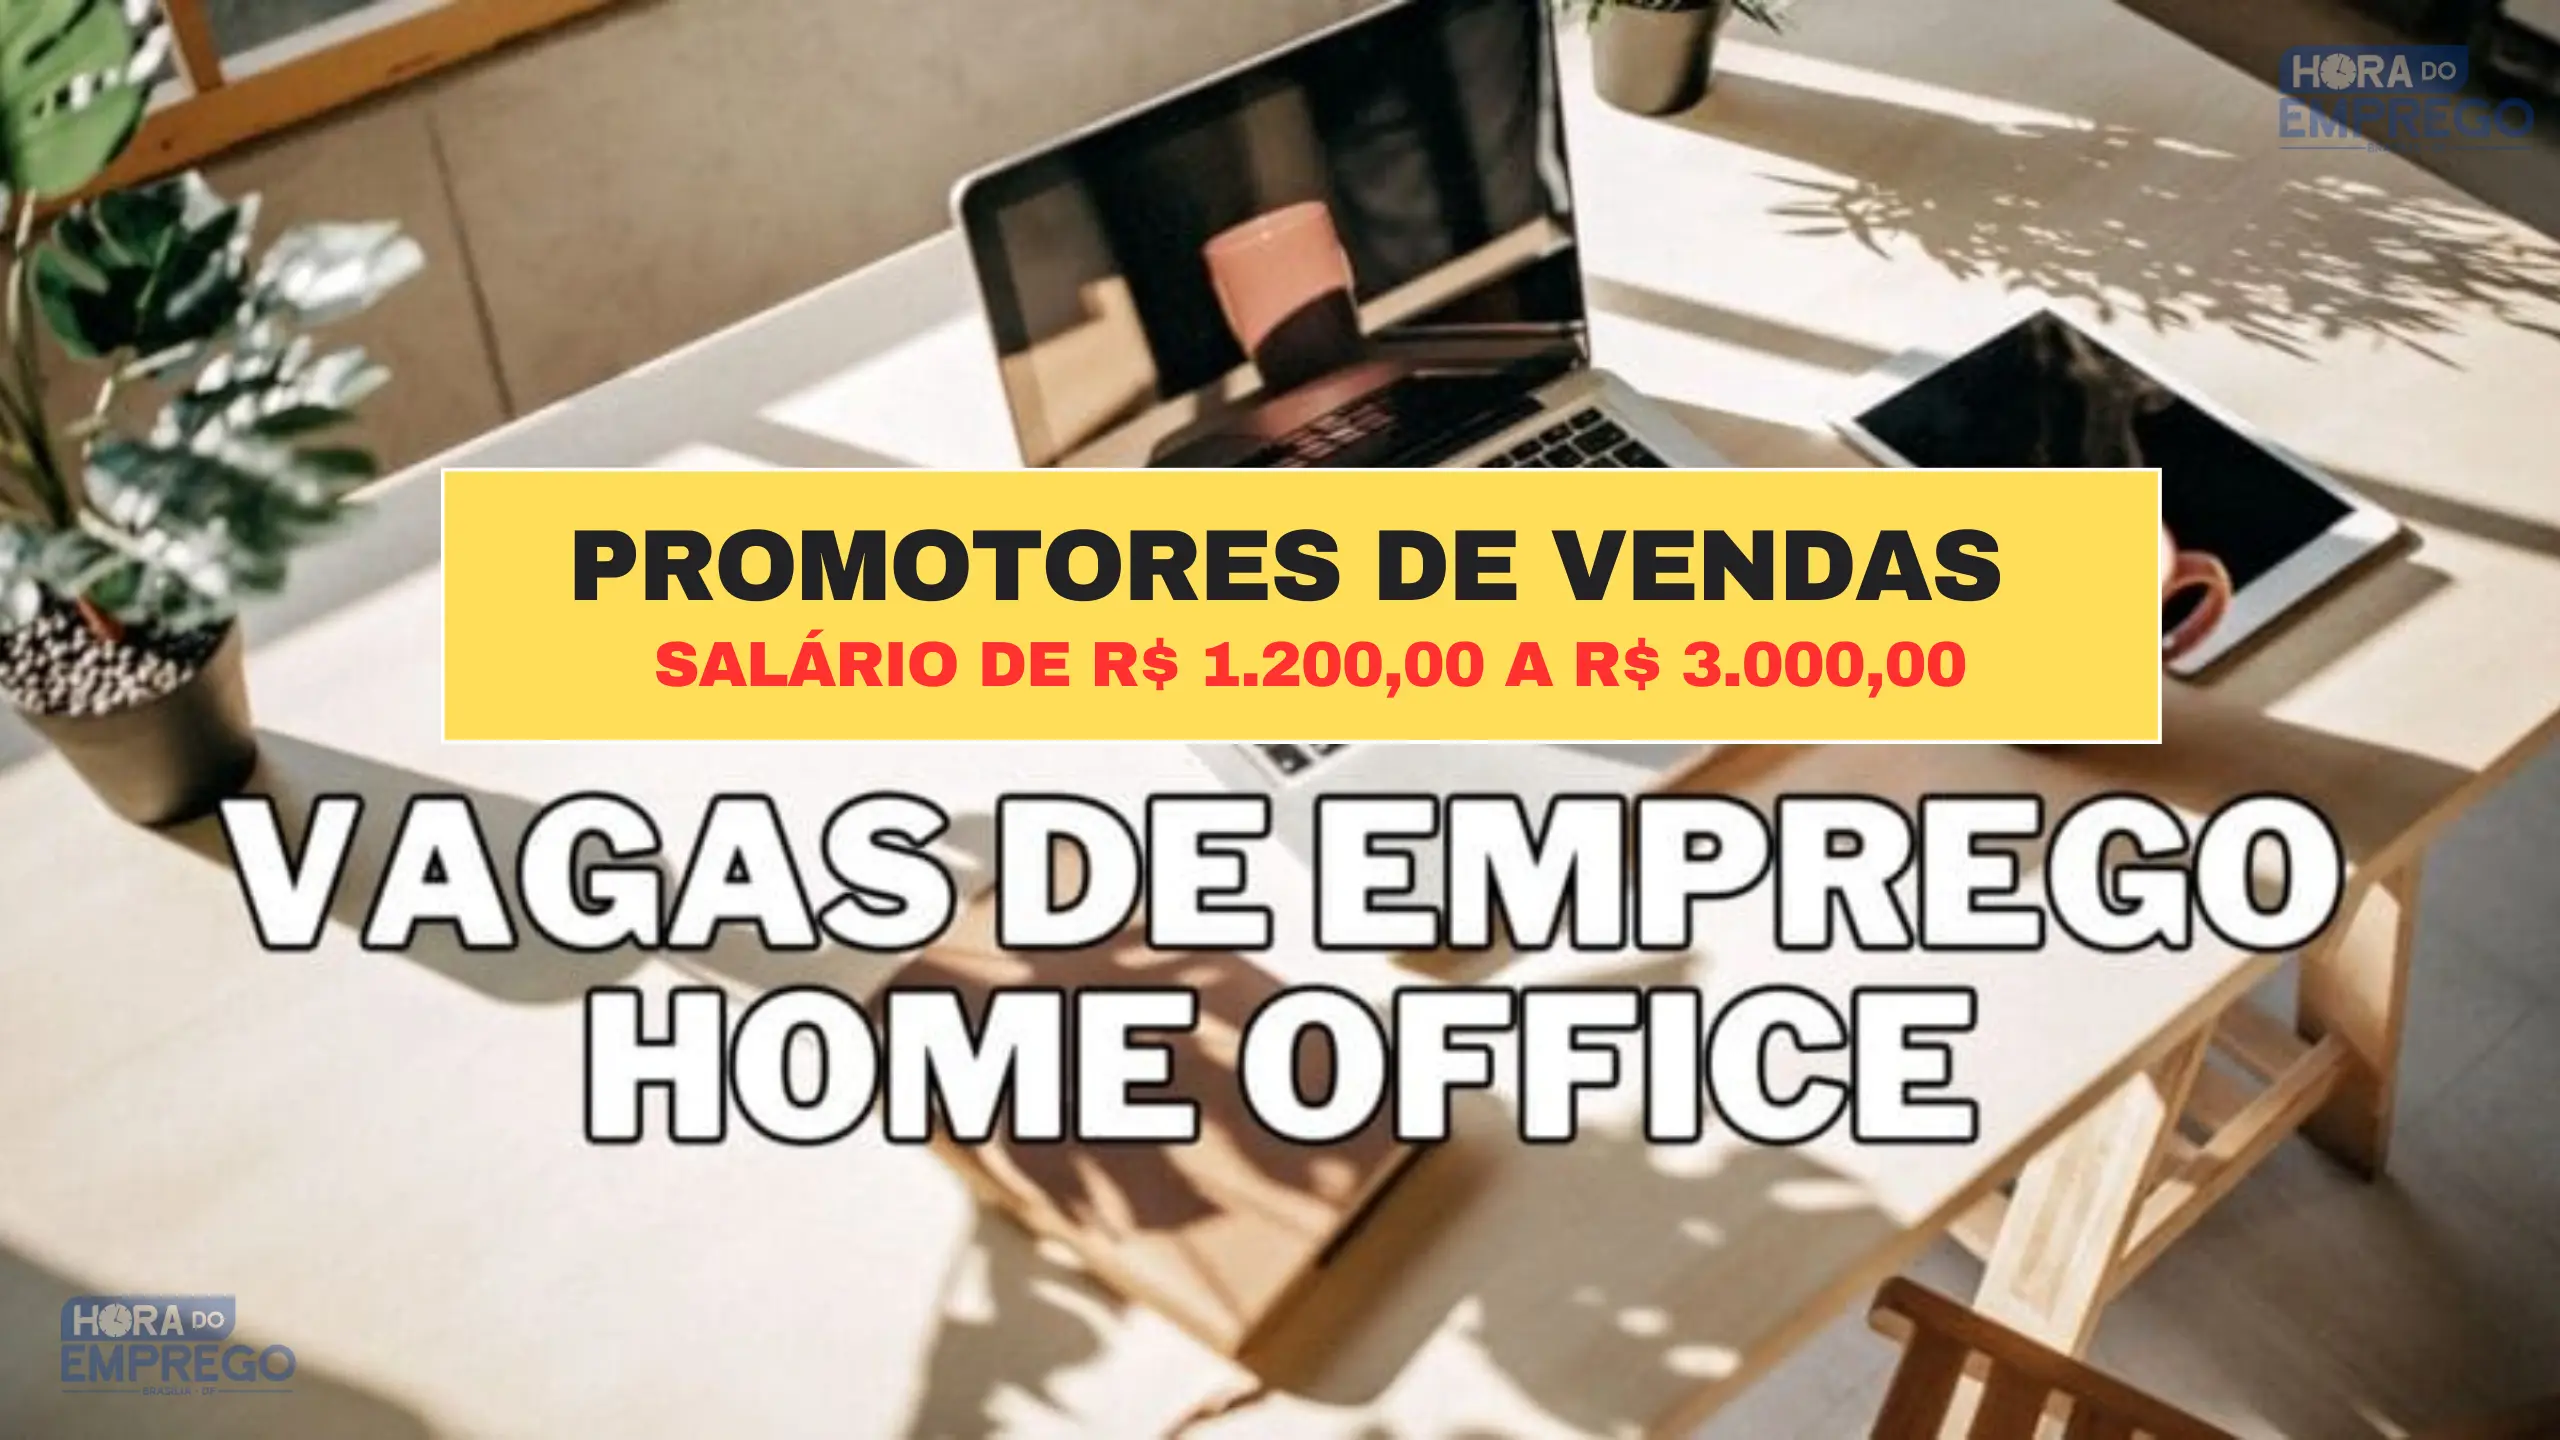 05 vagas HOME OFFICE para Promotores de vendas com Salário de R$ 1.200,00 a R$ 3.000,00